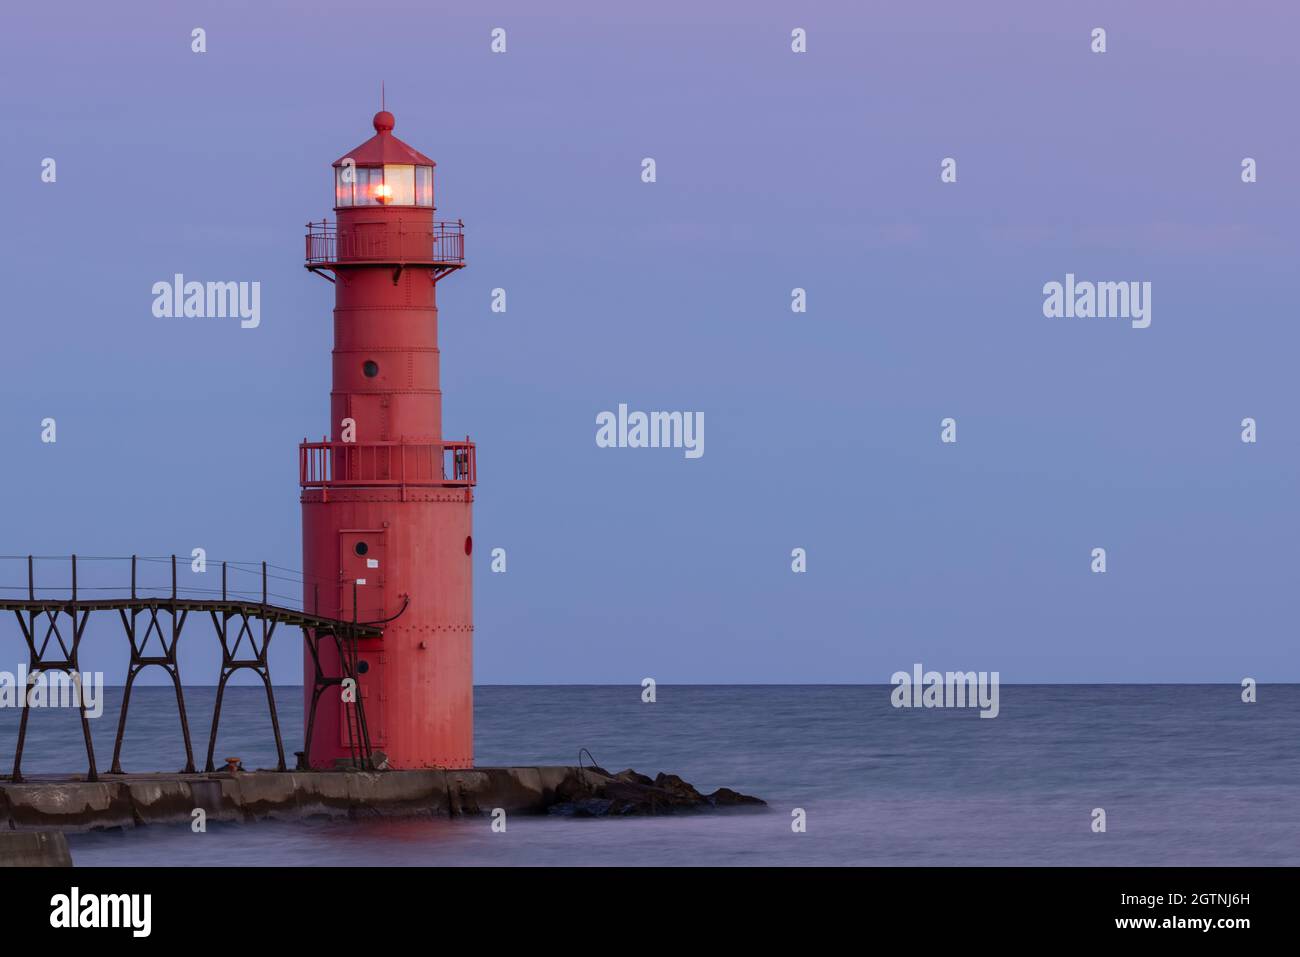 A Red Breakwater Lighthouse Illuminated At Night Along Lake Michigan Stock Photo